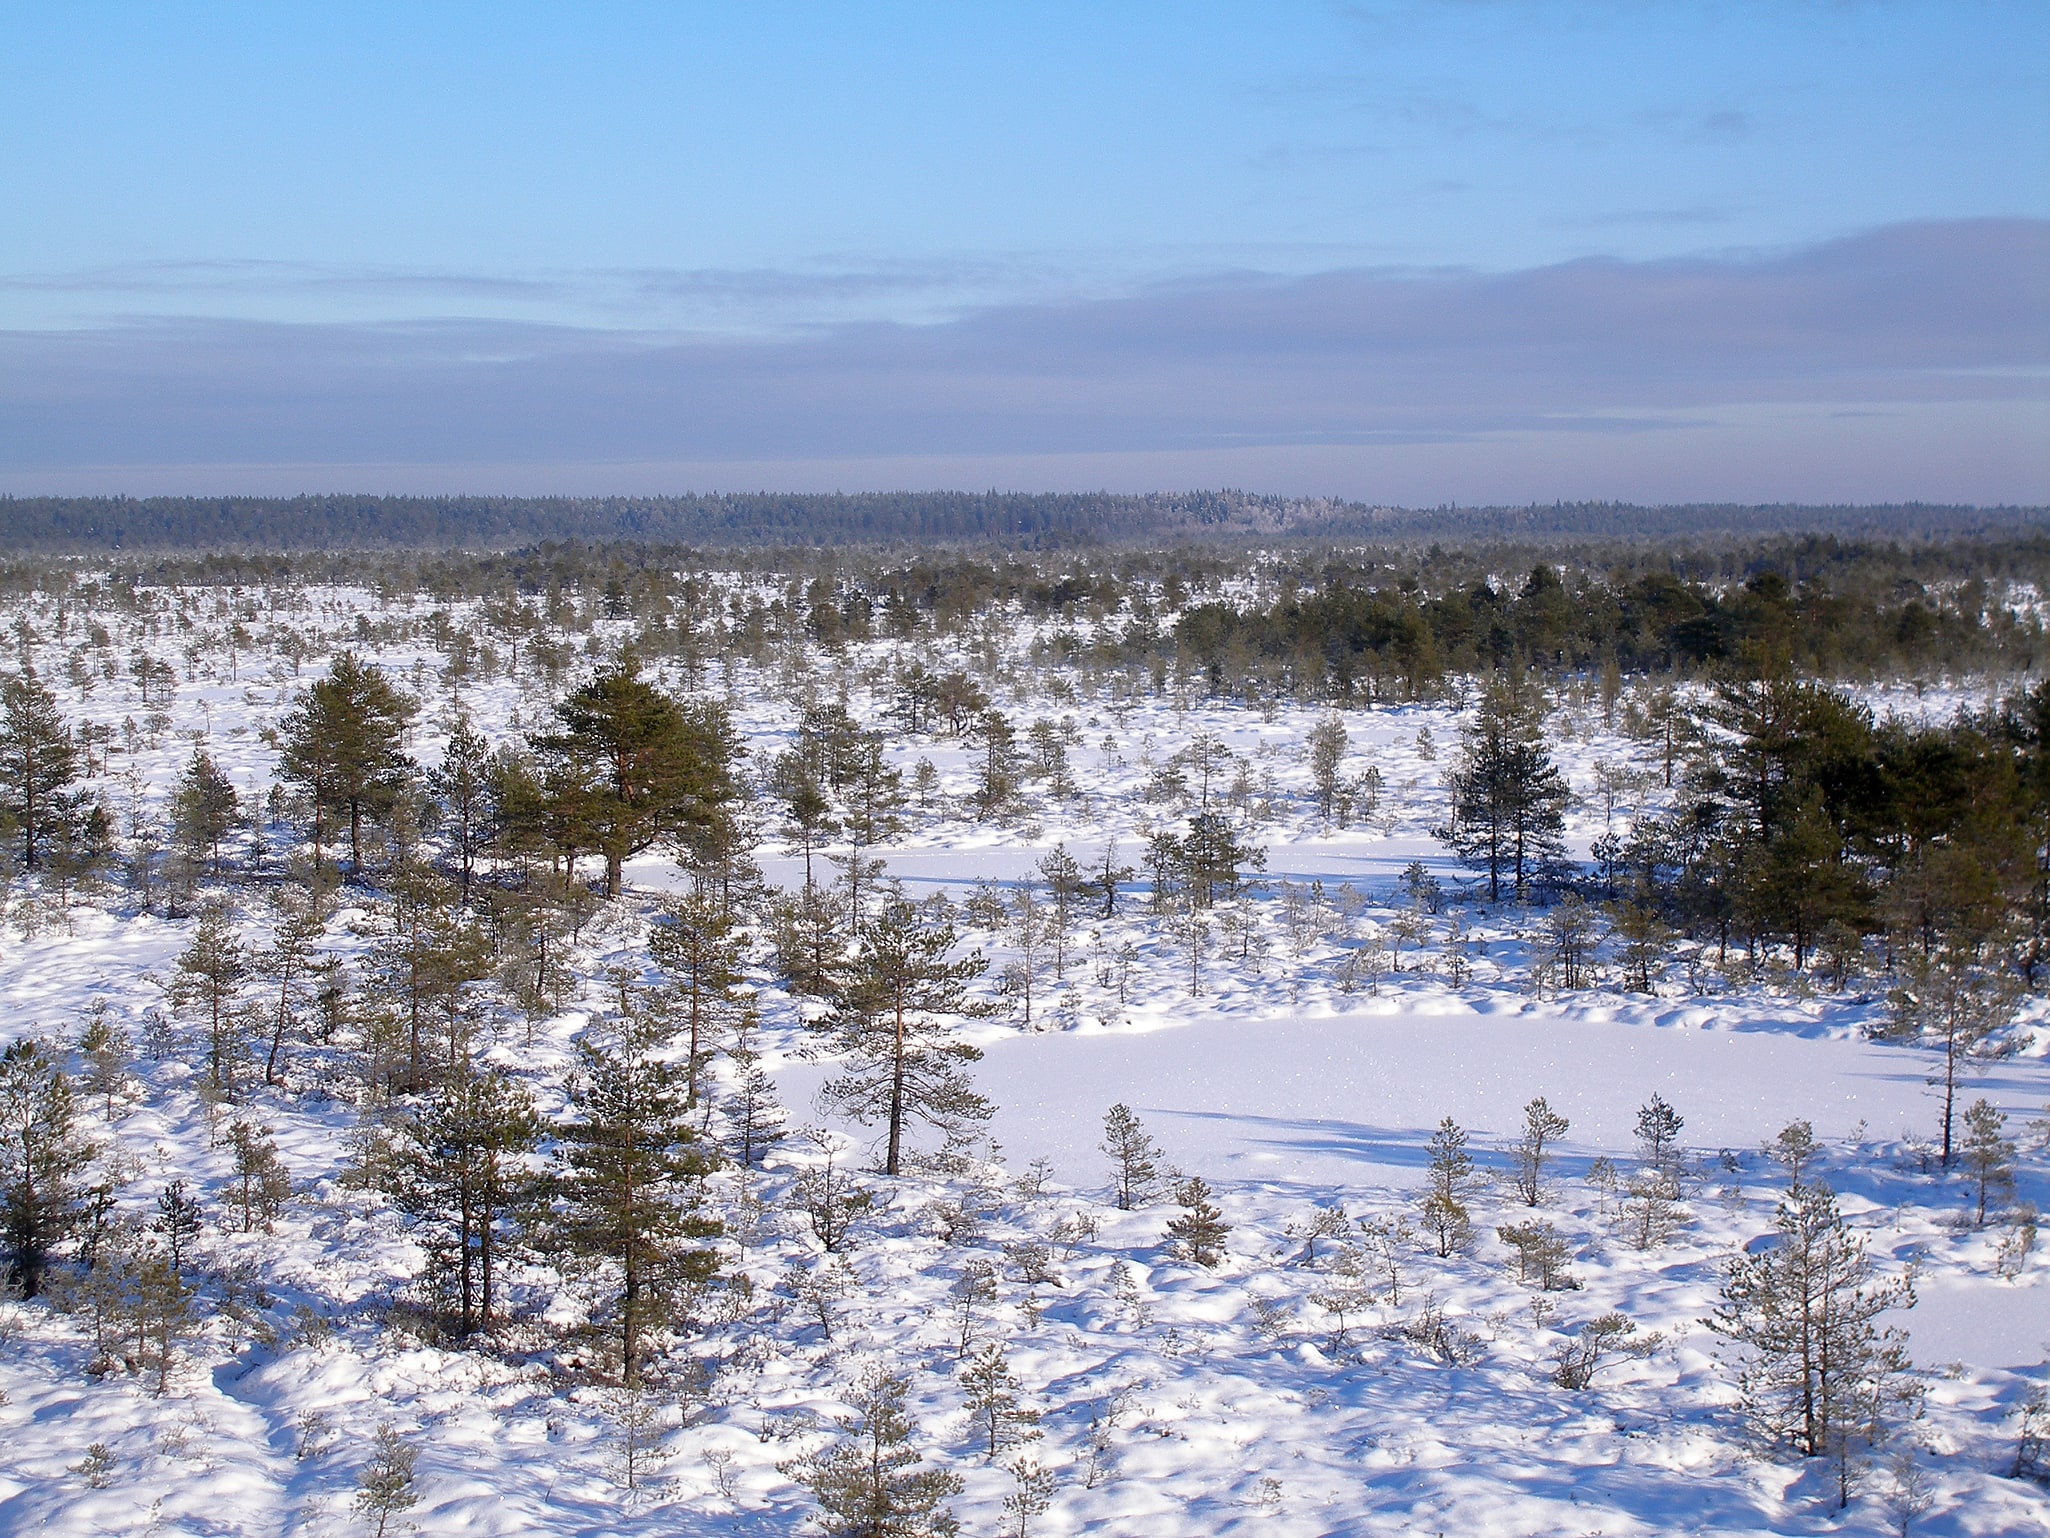 Põhja-Kõrvemaa Nature Reserve, Estonia